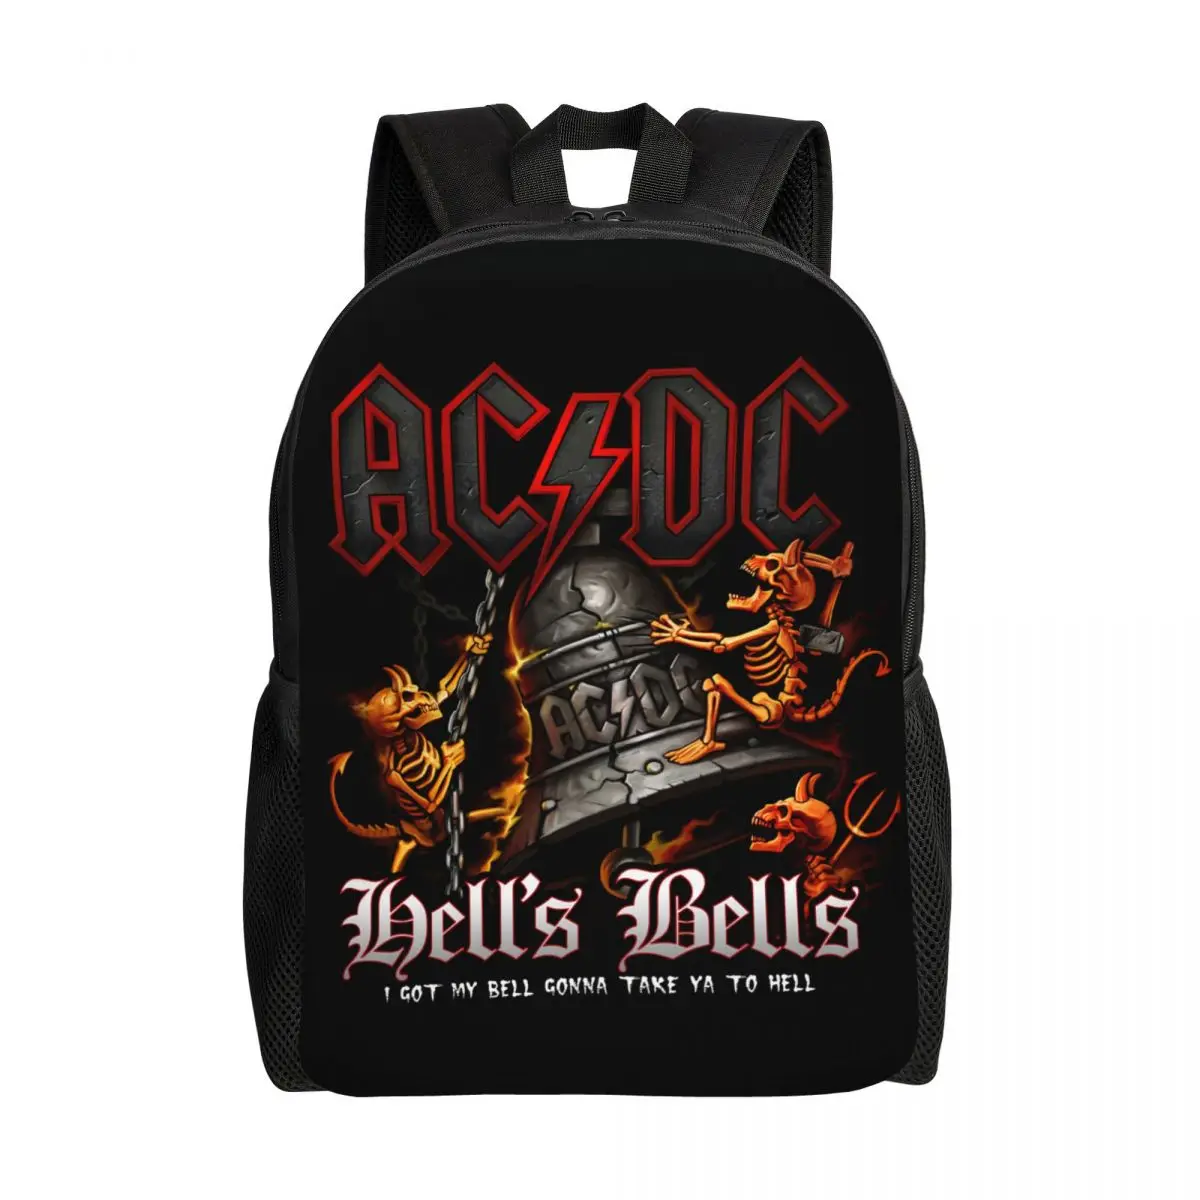 

Hells Bells AC DC Backpacks for Women Men Water Resistant College School Vintage Rock Bag Printing Bookbags